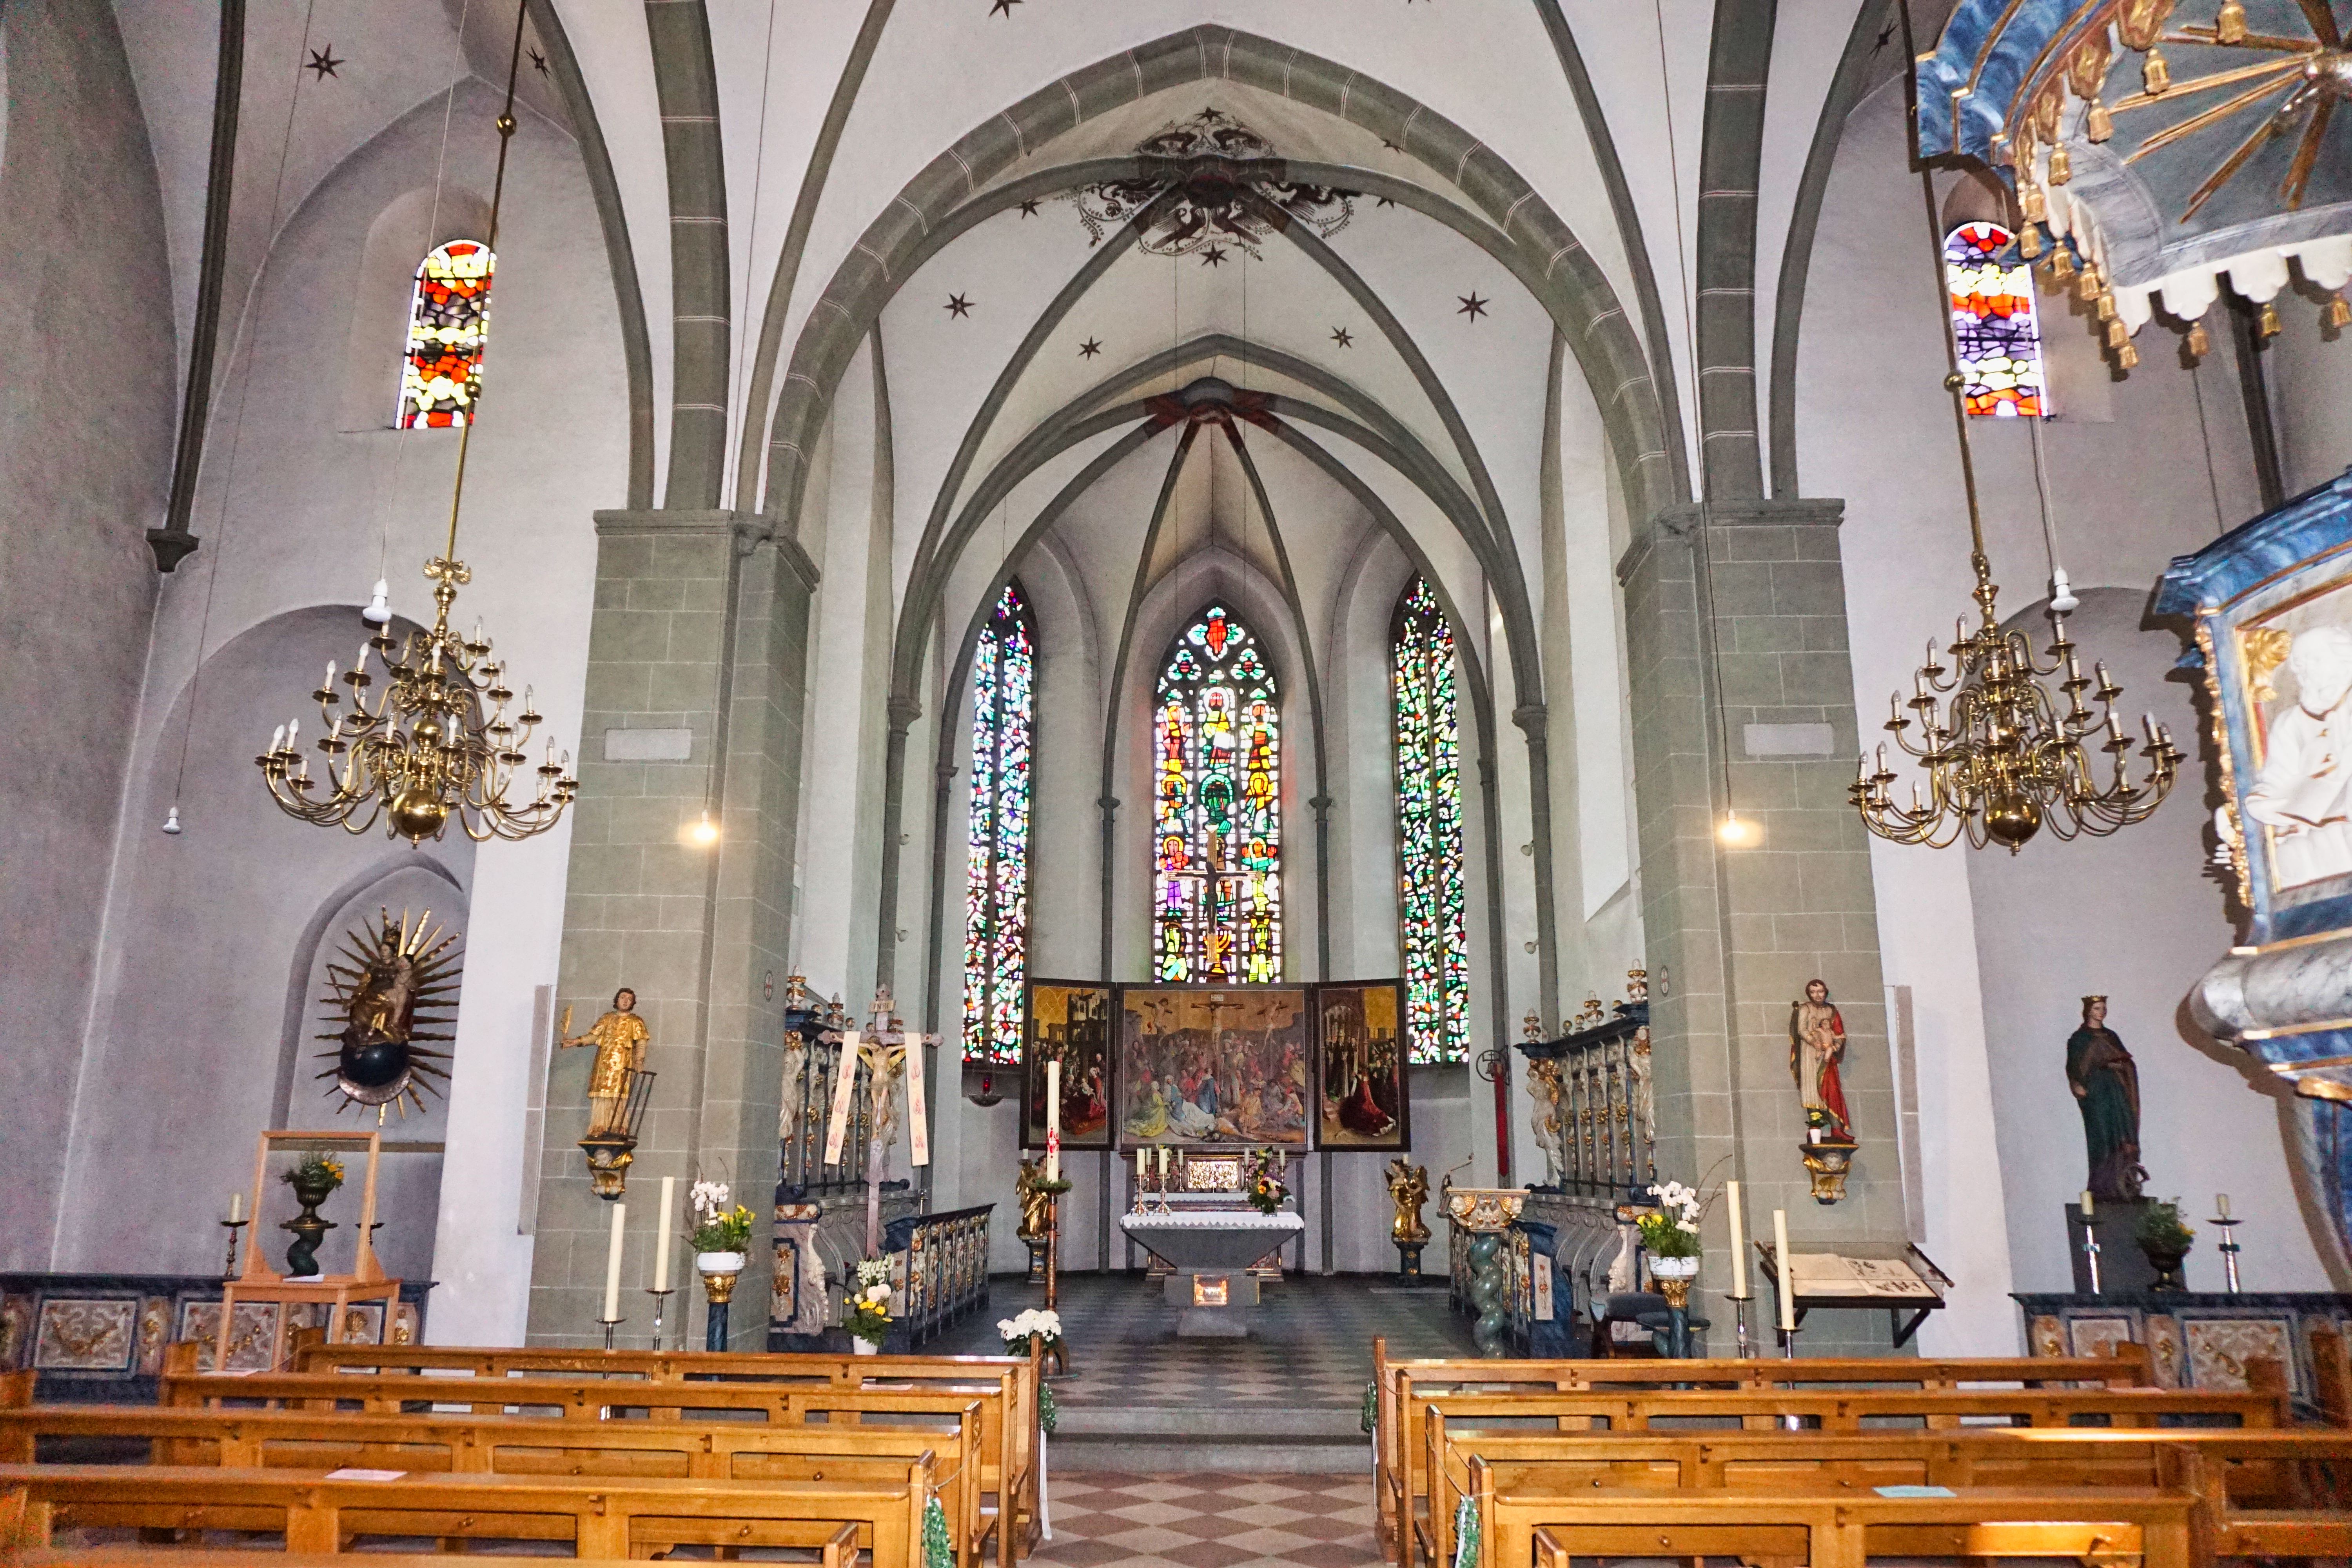 Chor der Pfarrkirche St. Laurentius in Clarholz, Herzebrock-Clarholz.
